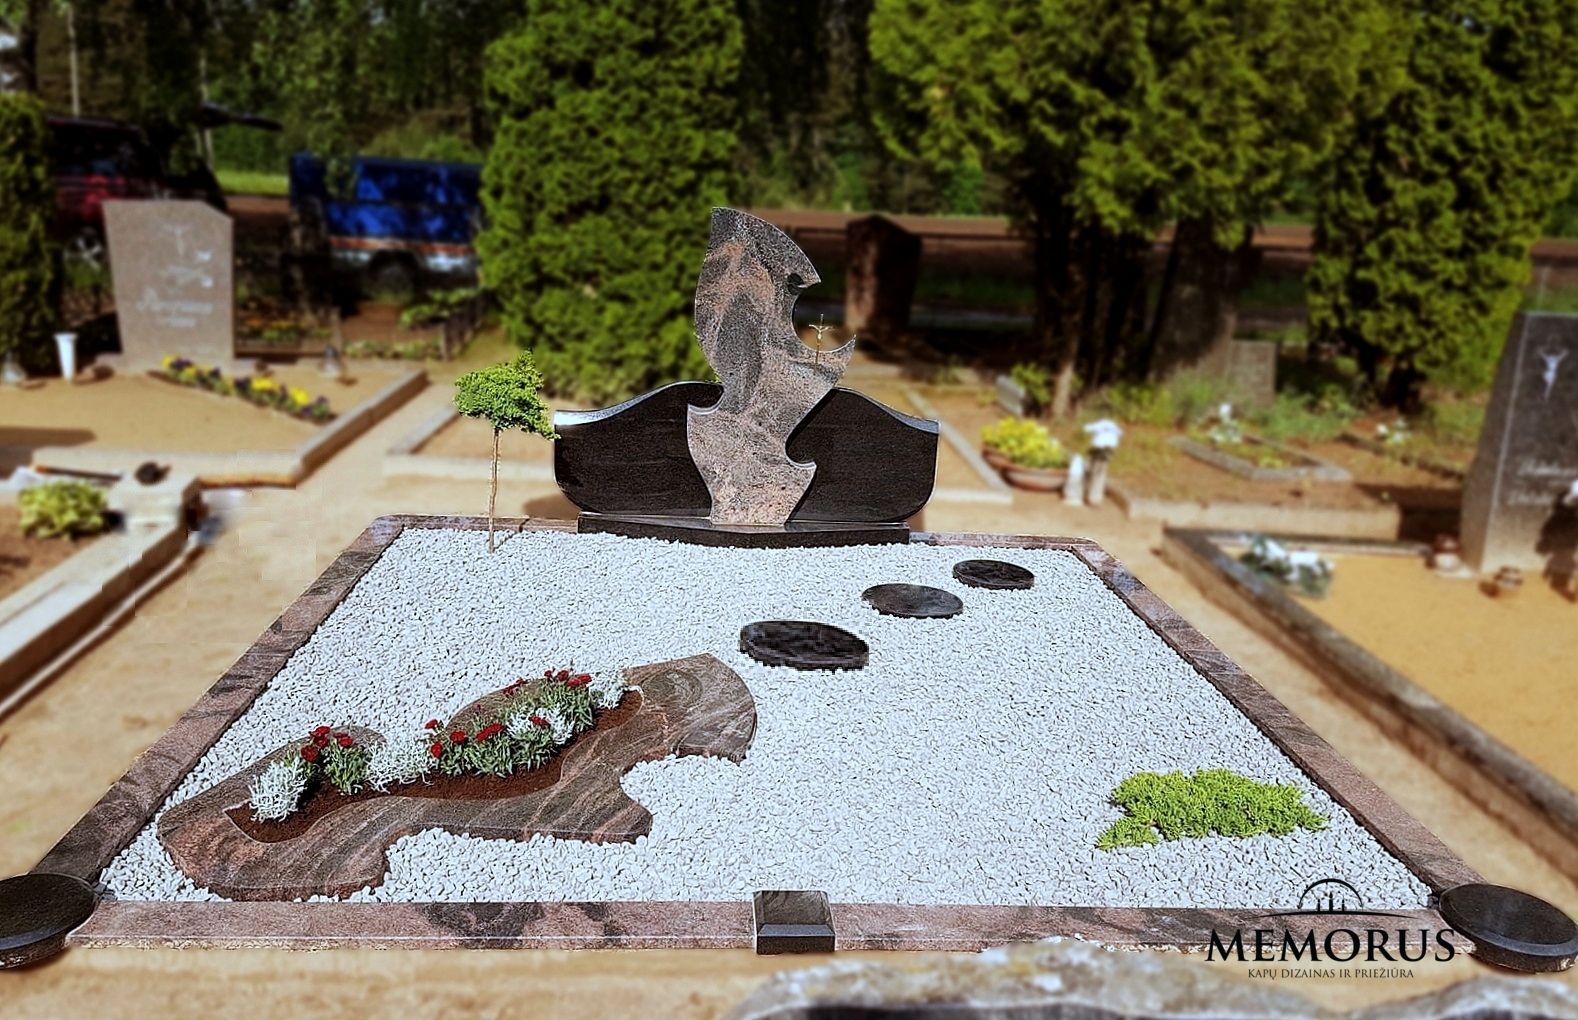 kapas užpiltas pilka skaldele ir dekoruotas granito gėlynu su akmens pėdutėmis ir augalais